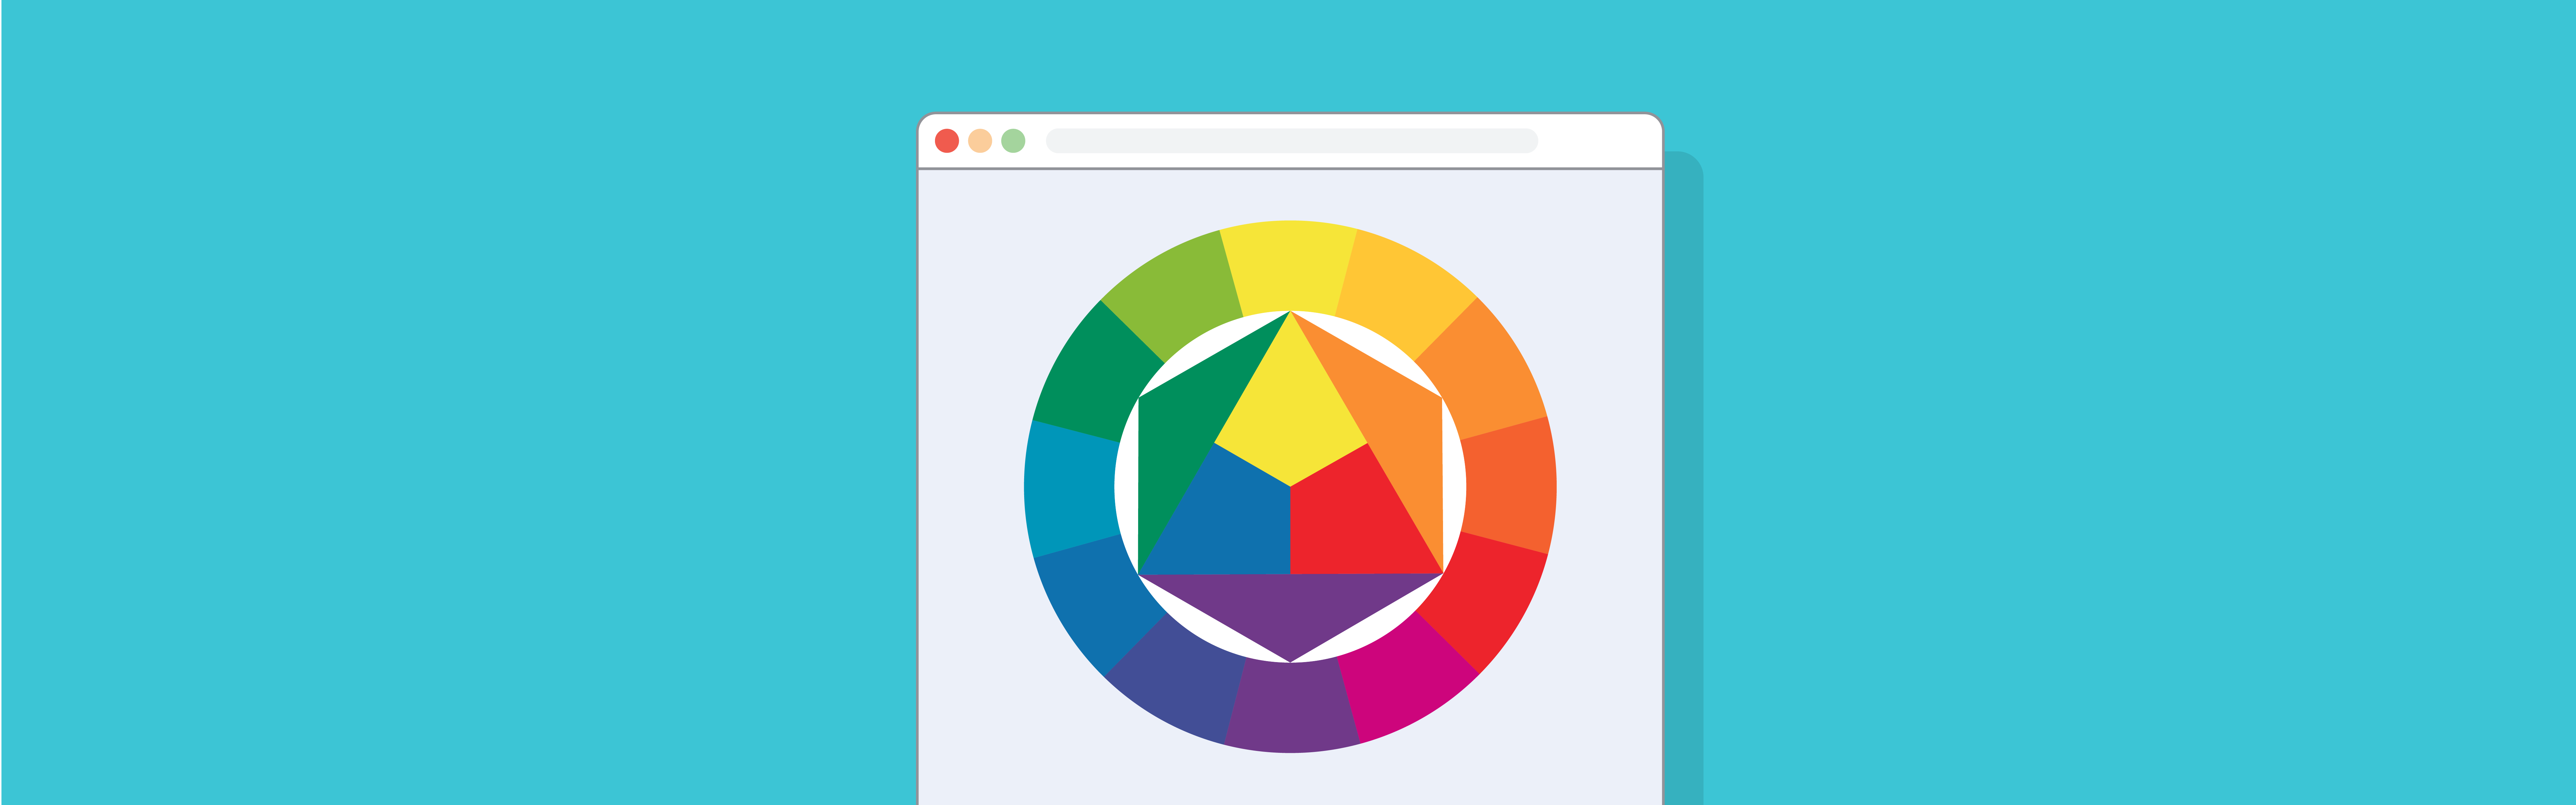 Трендовые цвета в веб-дизайне года | Дизайн, лого и бизнес | Блог Турболого